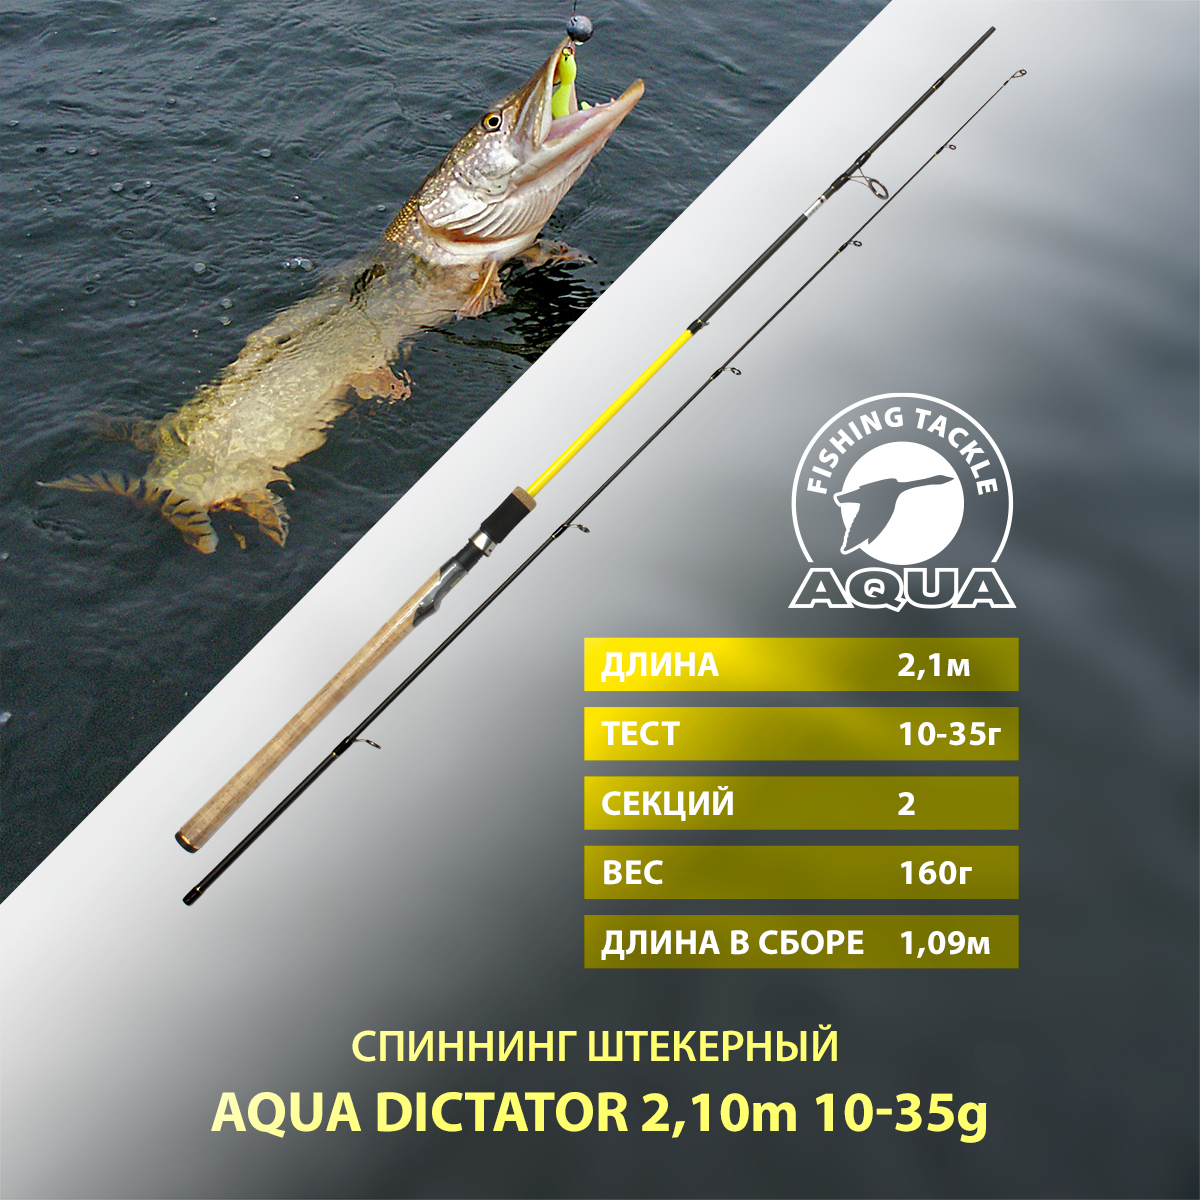 Спиннинг штекерный для рыбалки AQUA DICTATOR